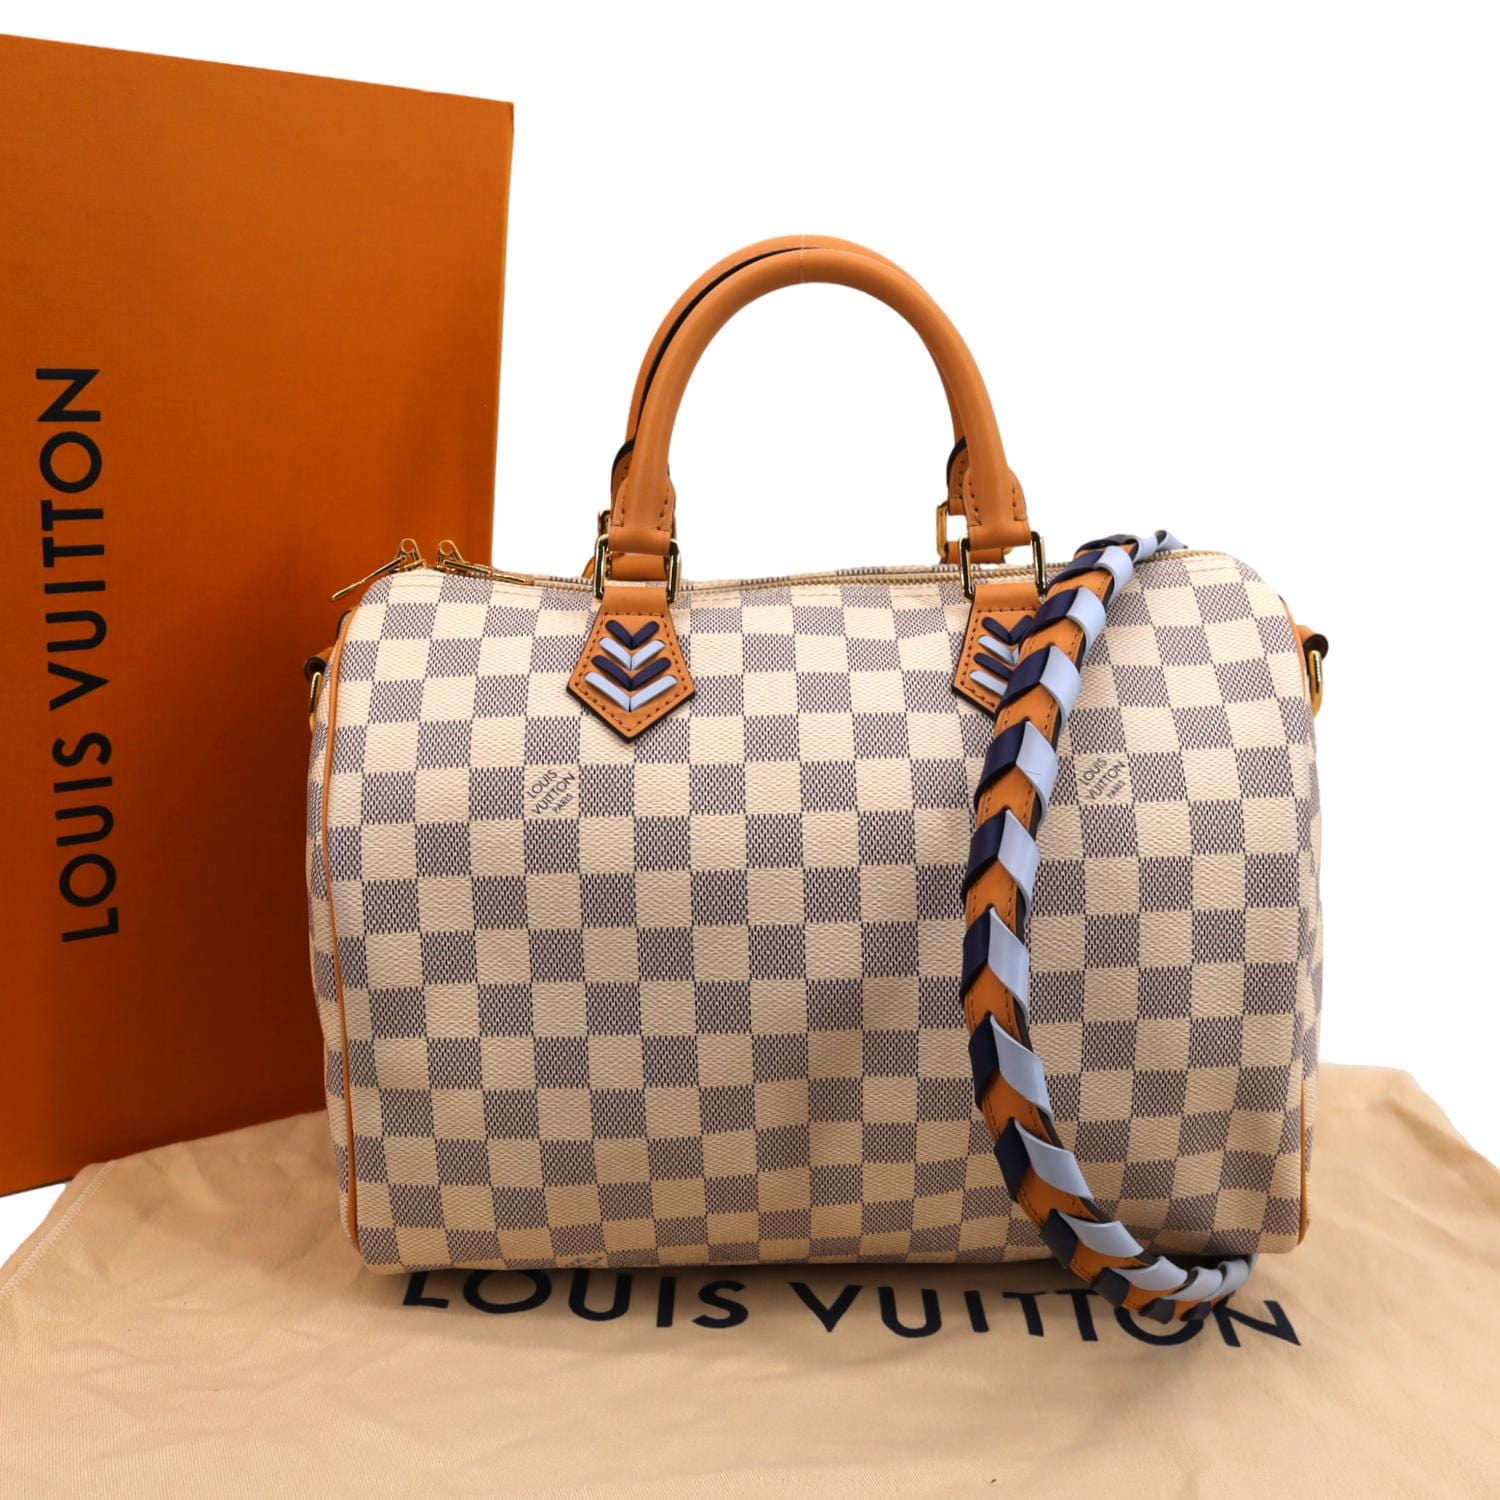 Louis Vuitton Speedy 30 Damier Azur My next big purchase